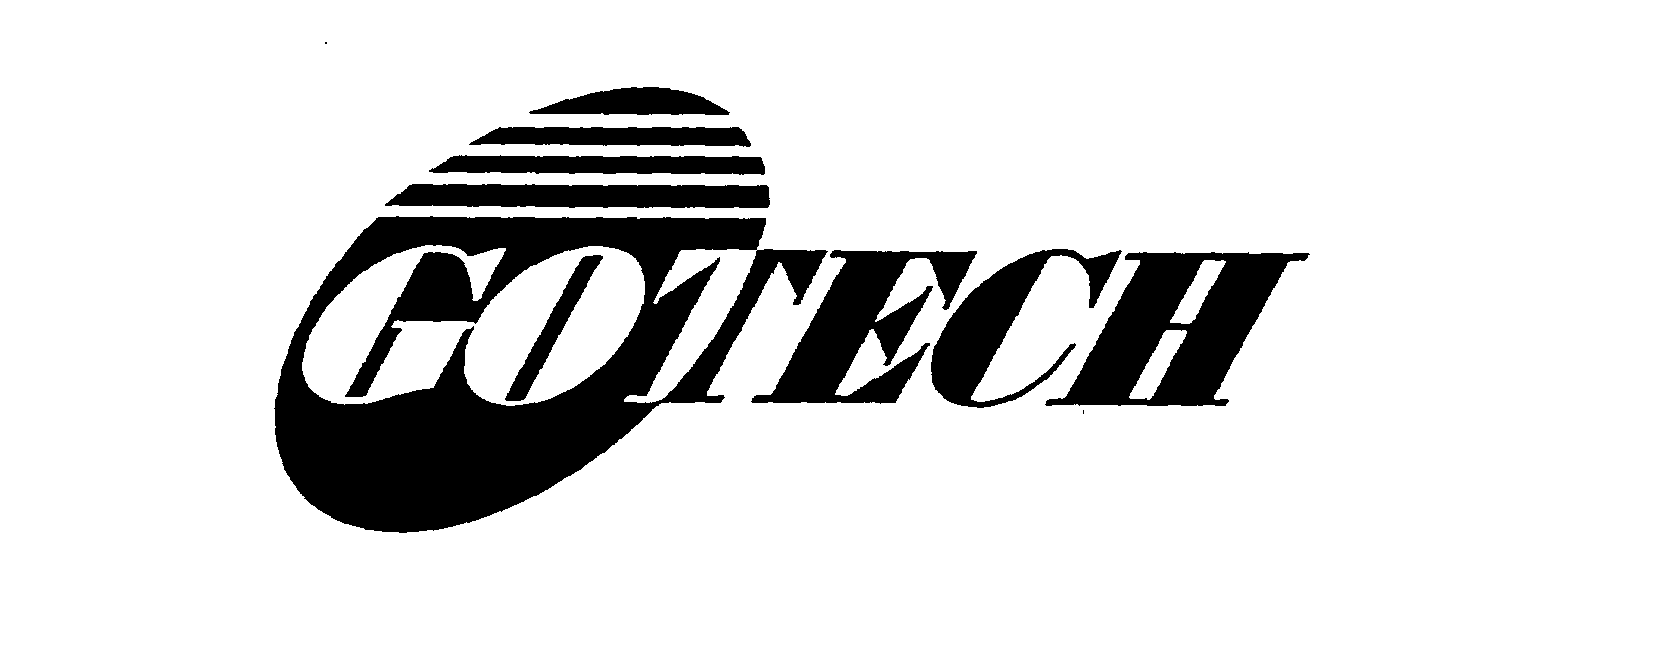 Trademark Logo GOTECH